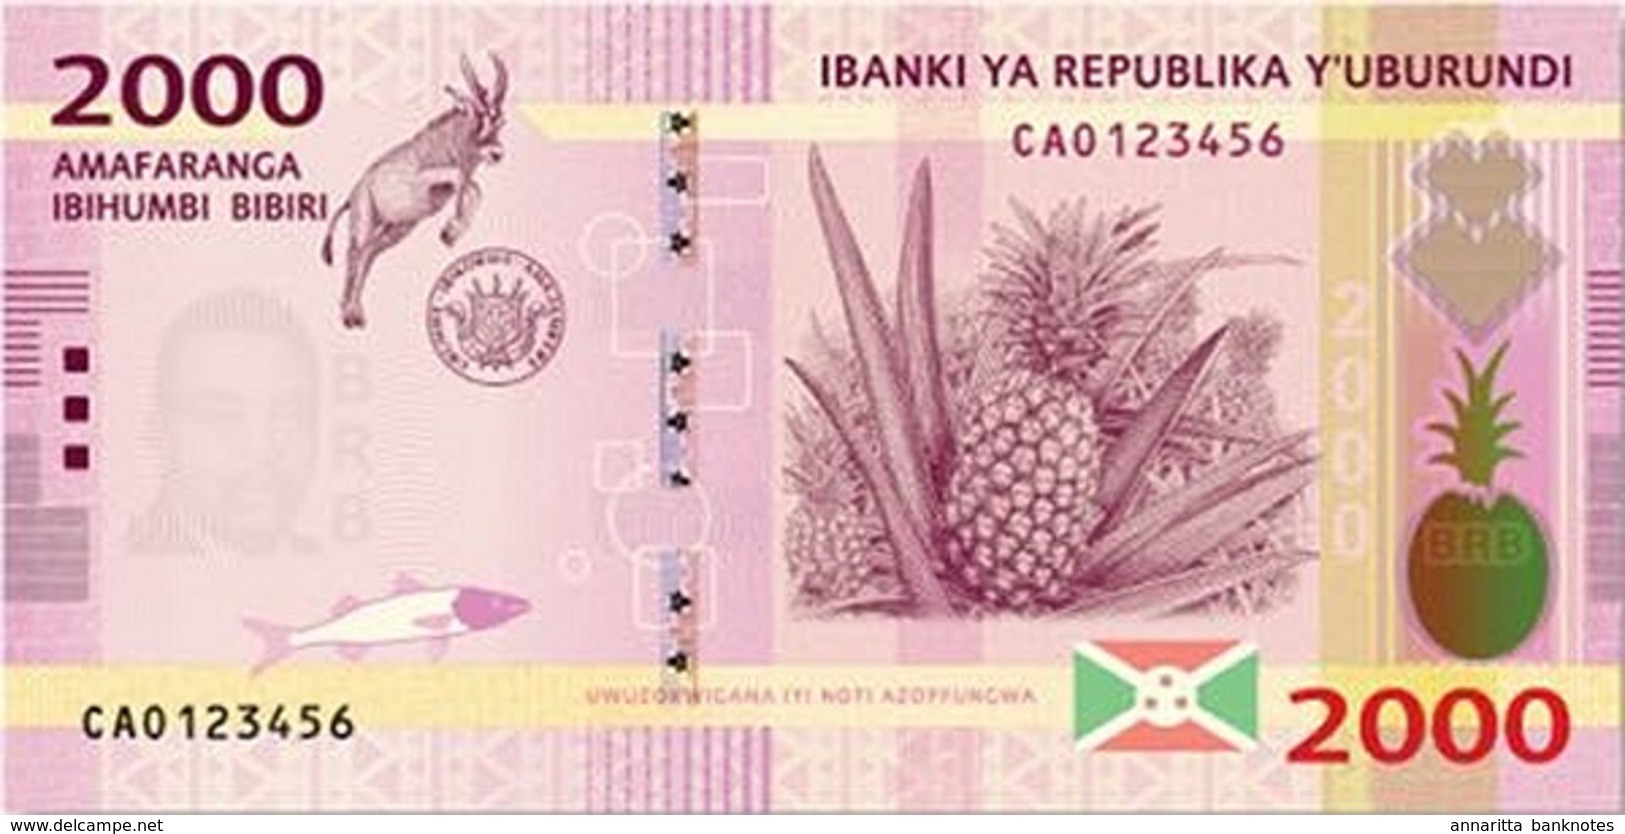 Burundi (BRB) 500 Francs 2015 UNC Cat No. P-50a / BI236a - Burundi